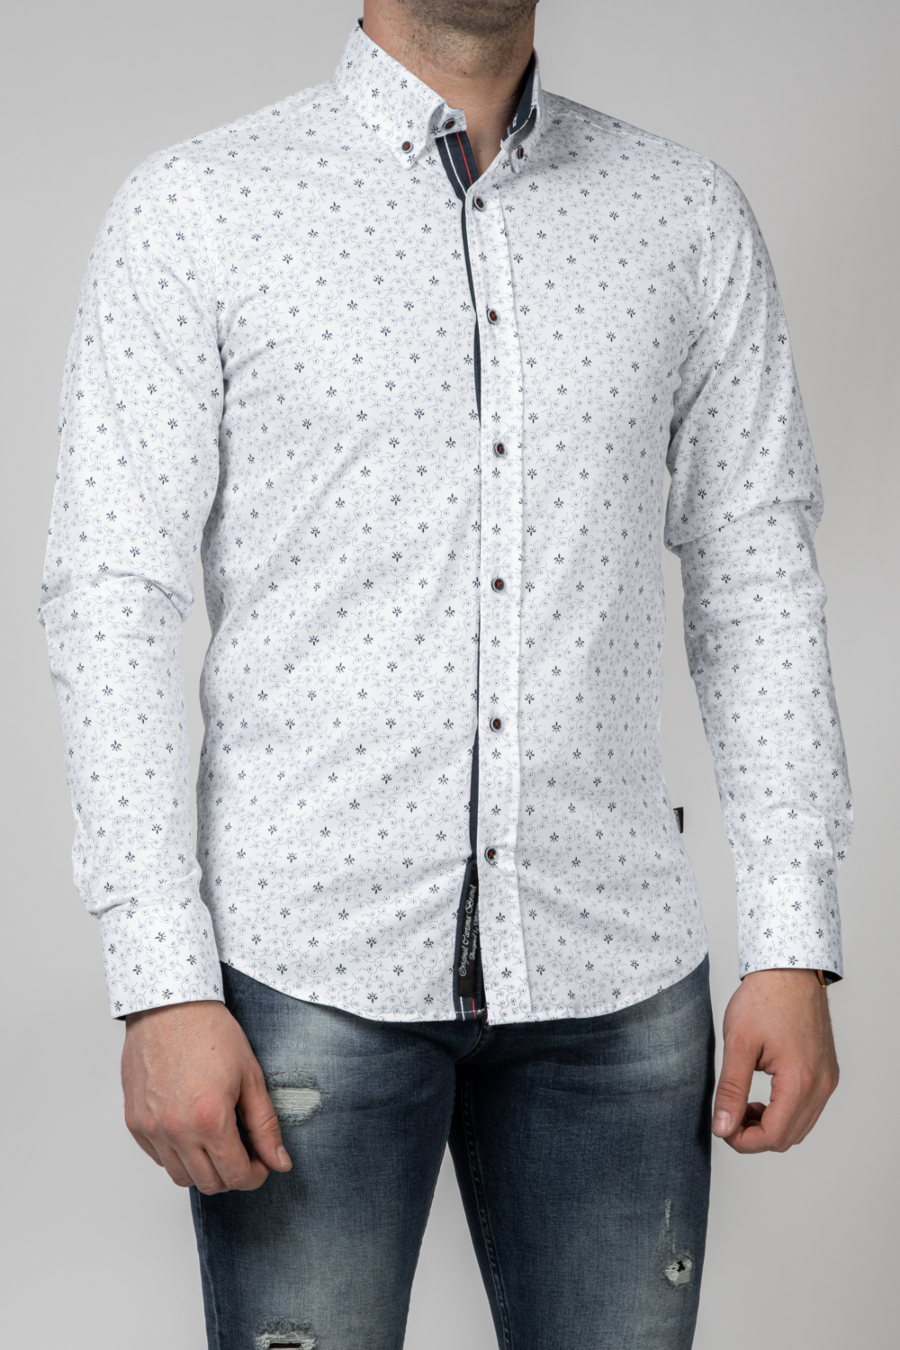 Moška srajca CA-8486, belaa